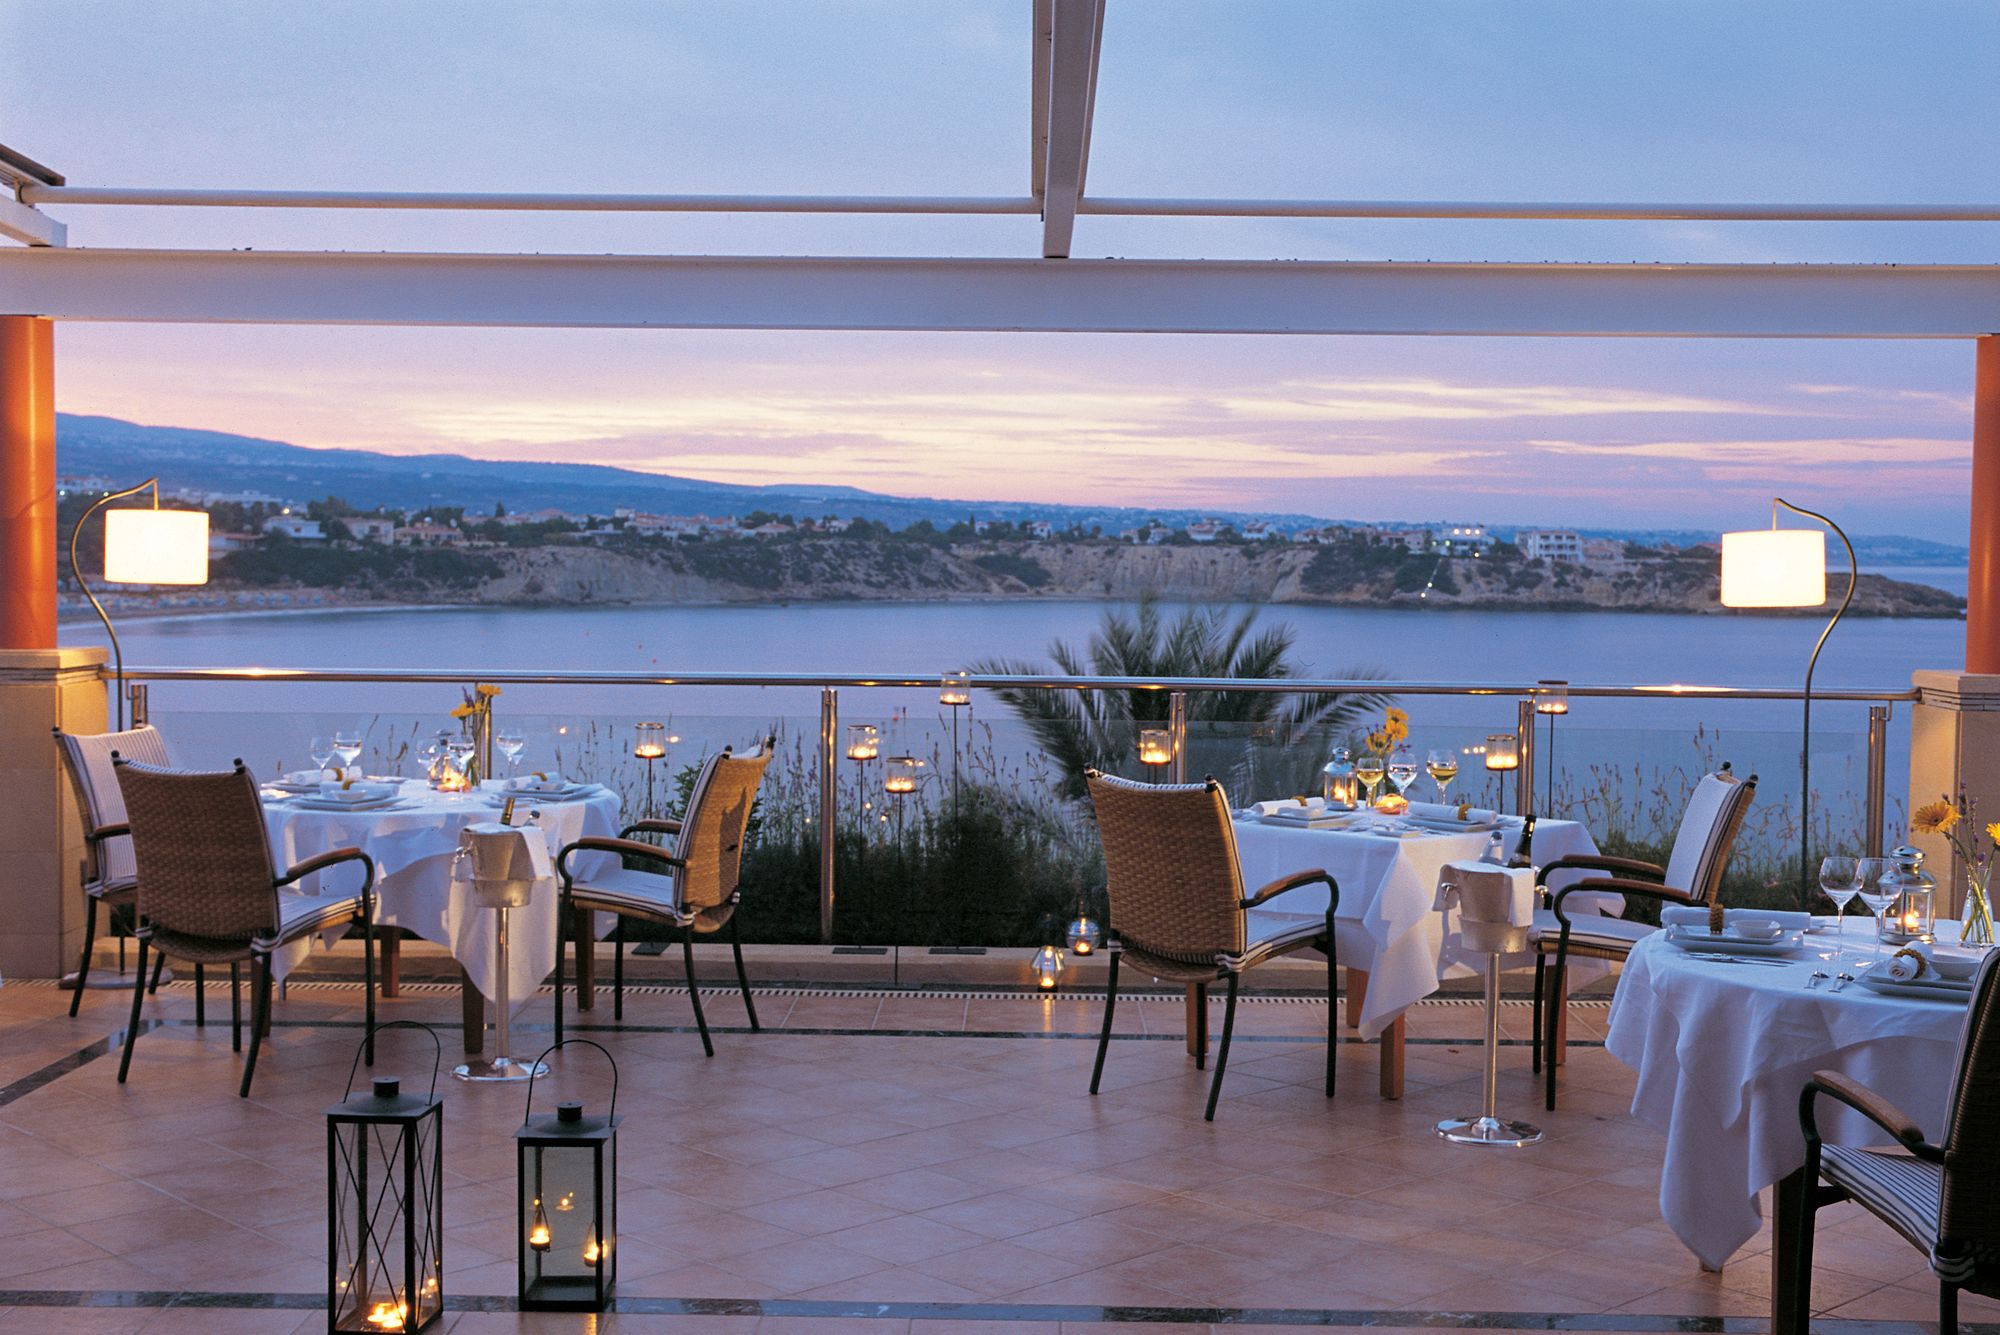 The view is beautiful. Кафе на набережной Кипра. Кипр Thalassa. Ресторан с видом на море. Ресторан у моря.